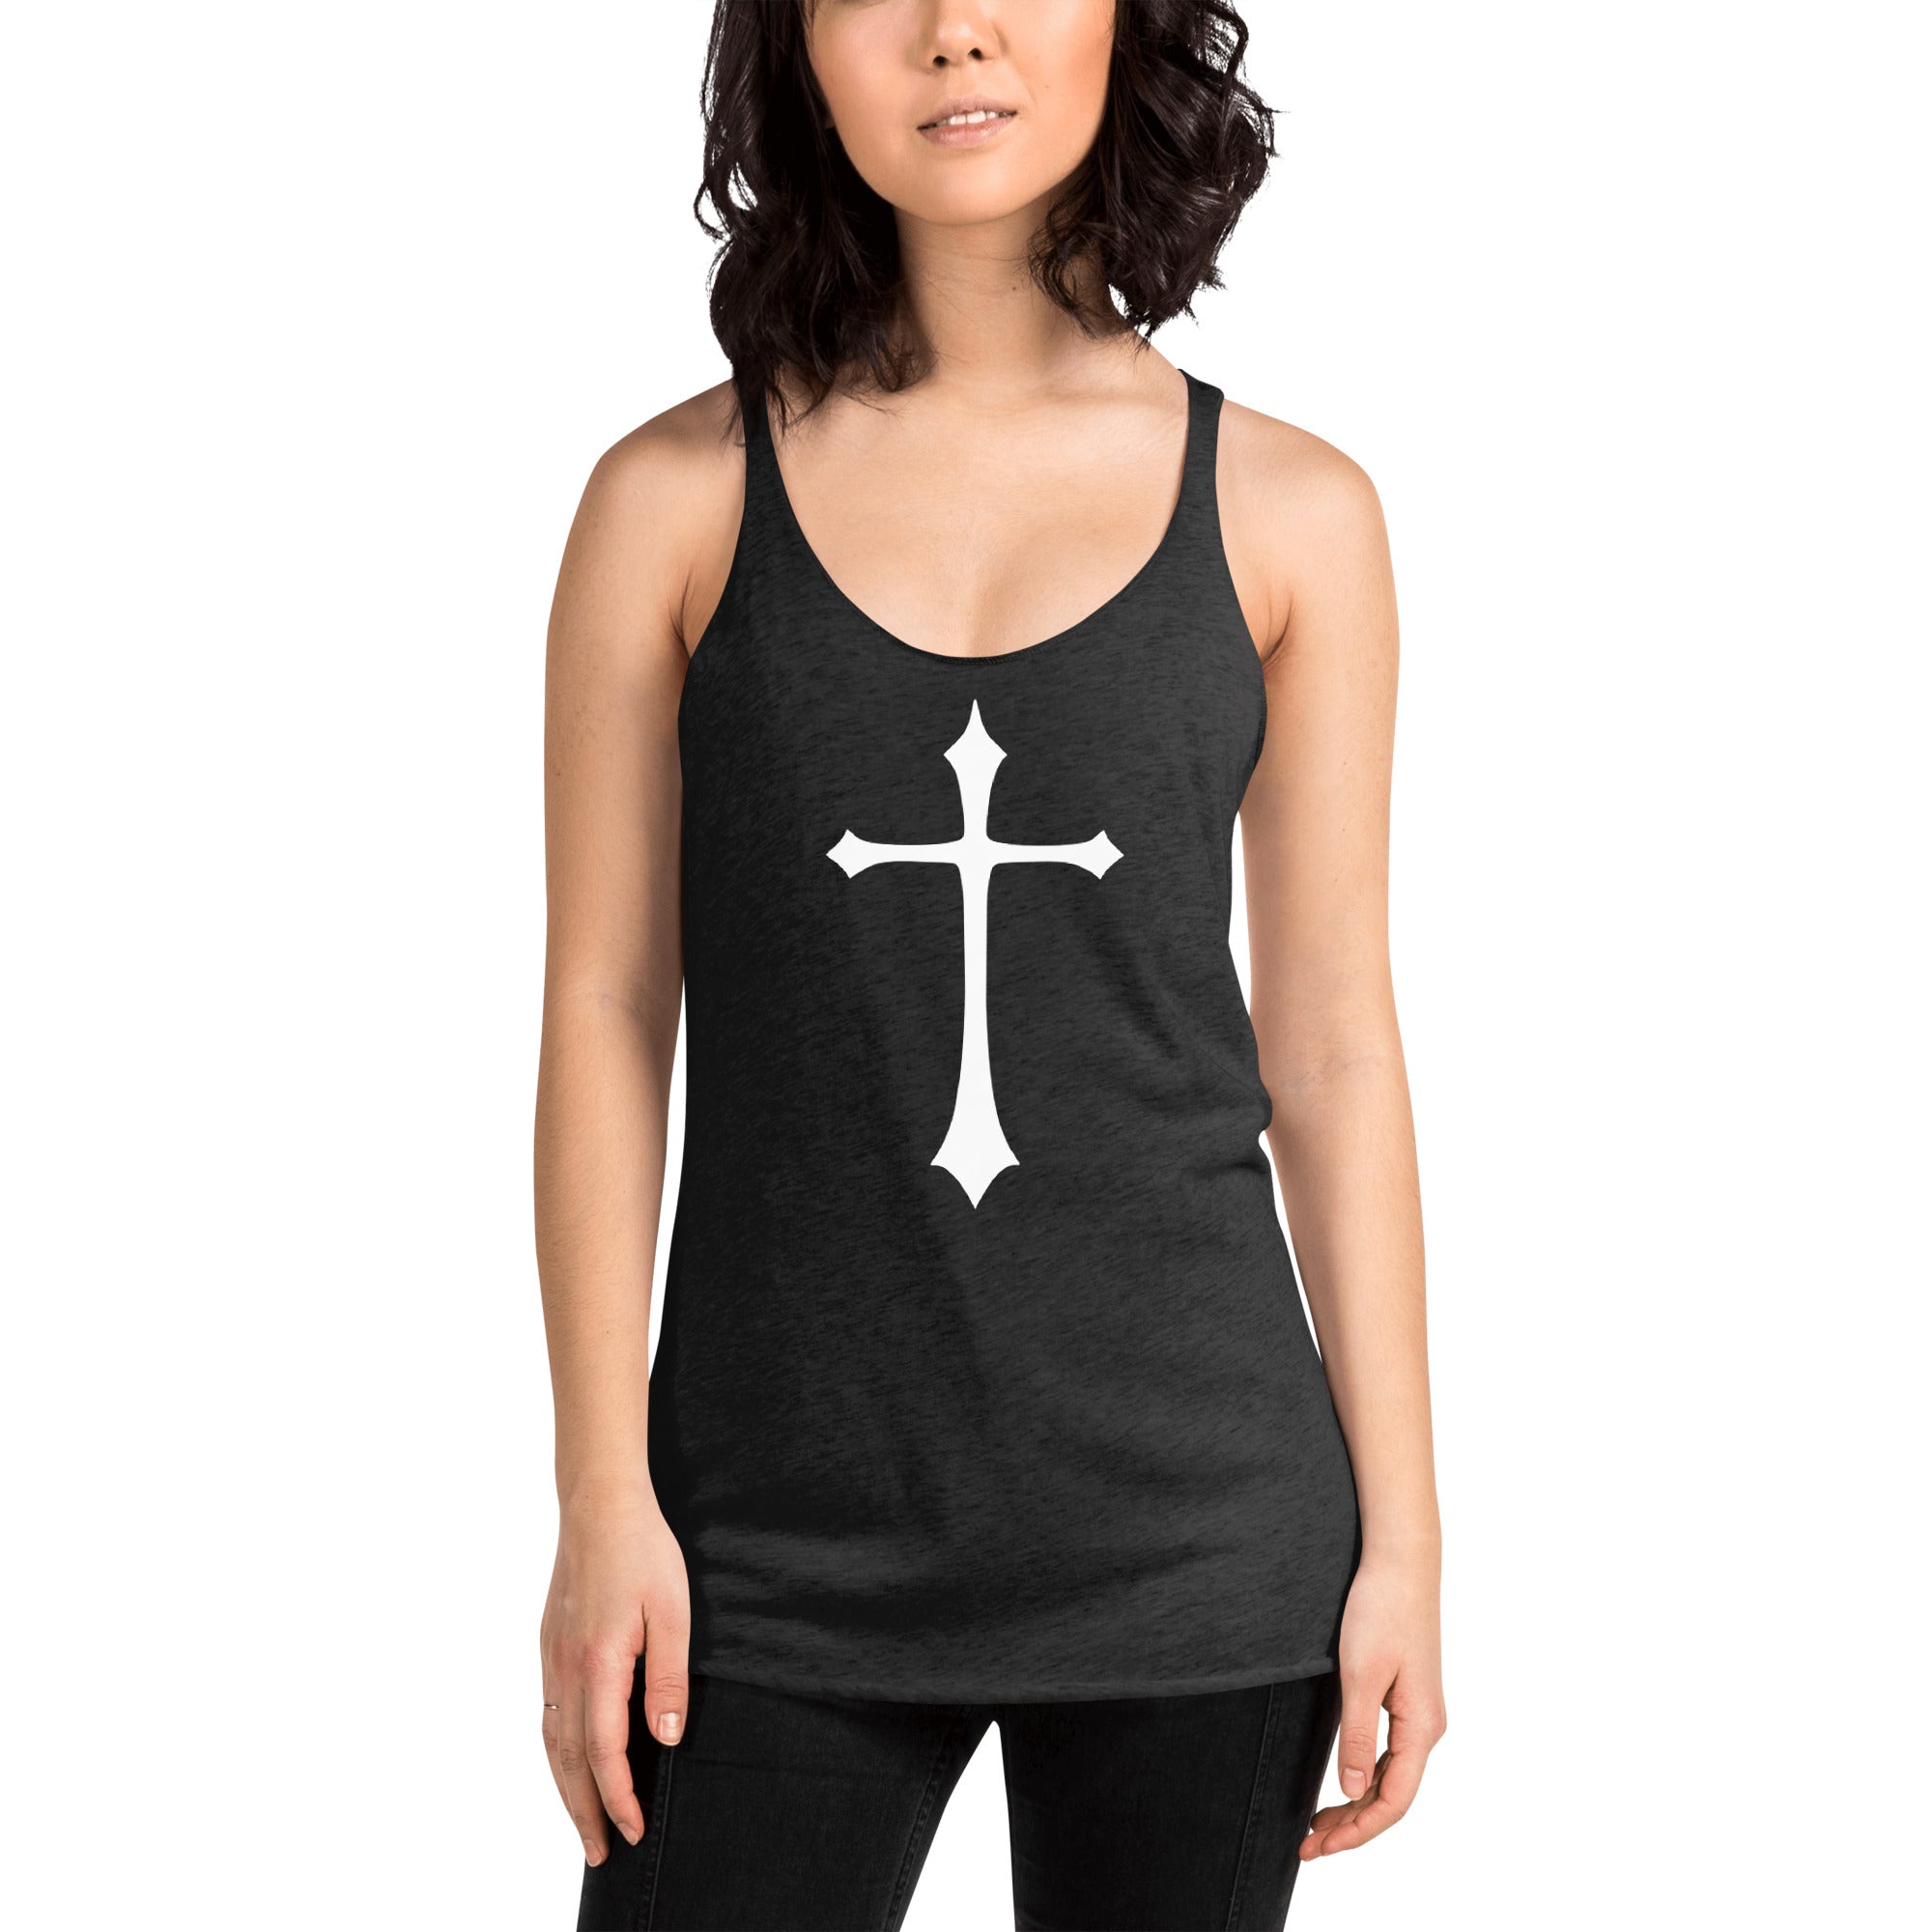 White Gothic Medeival Holy Cross Women's Racerback Tank Top Shirt